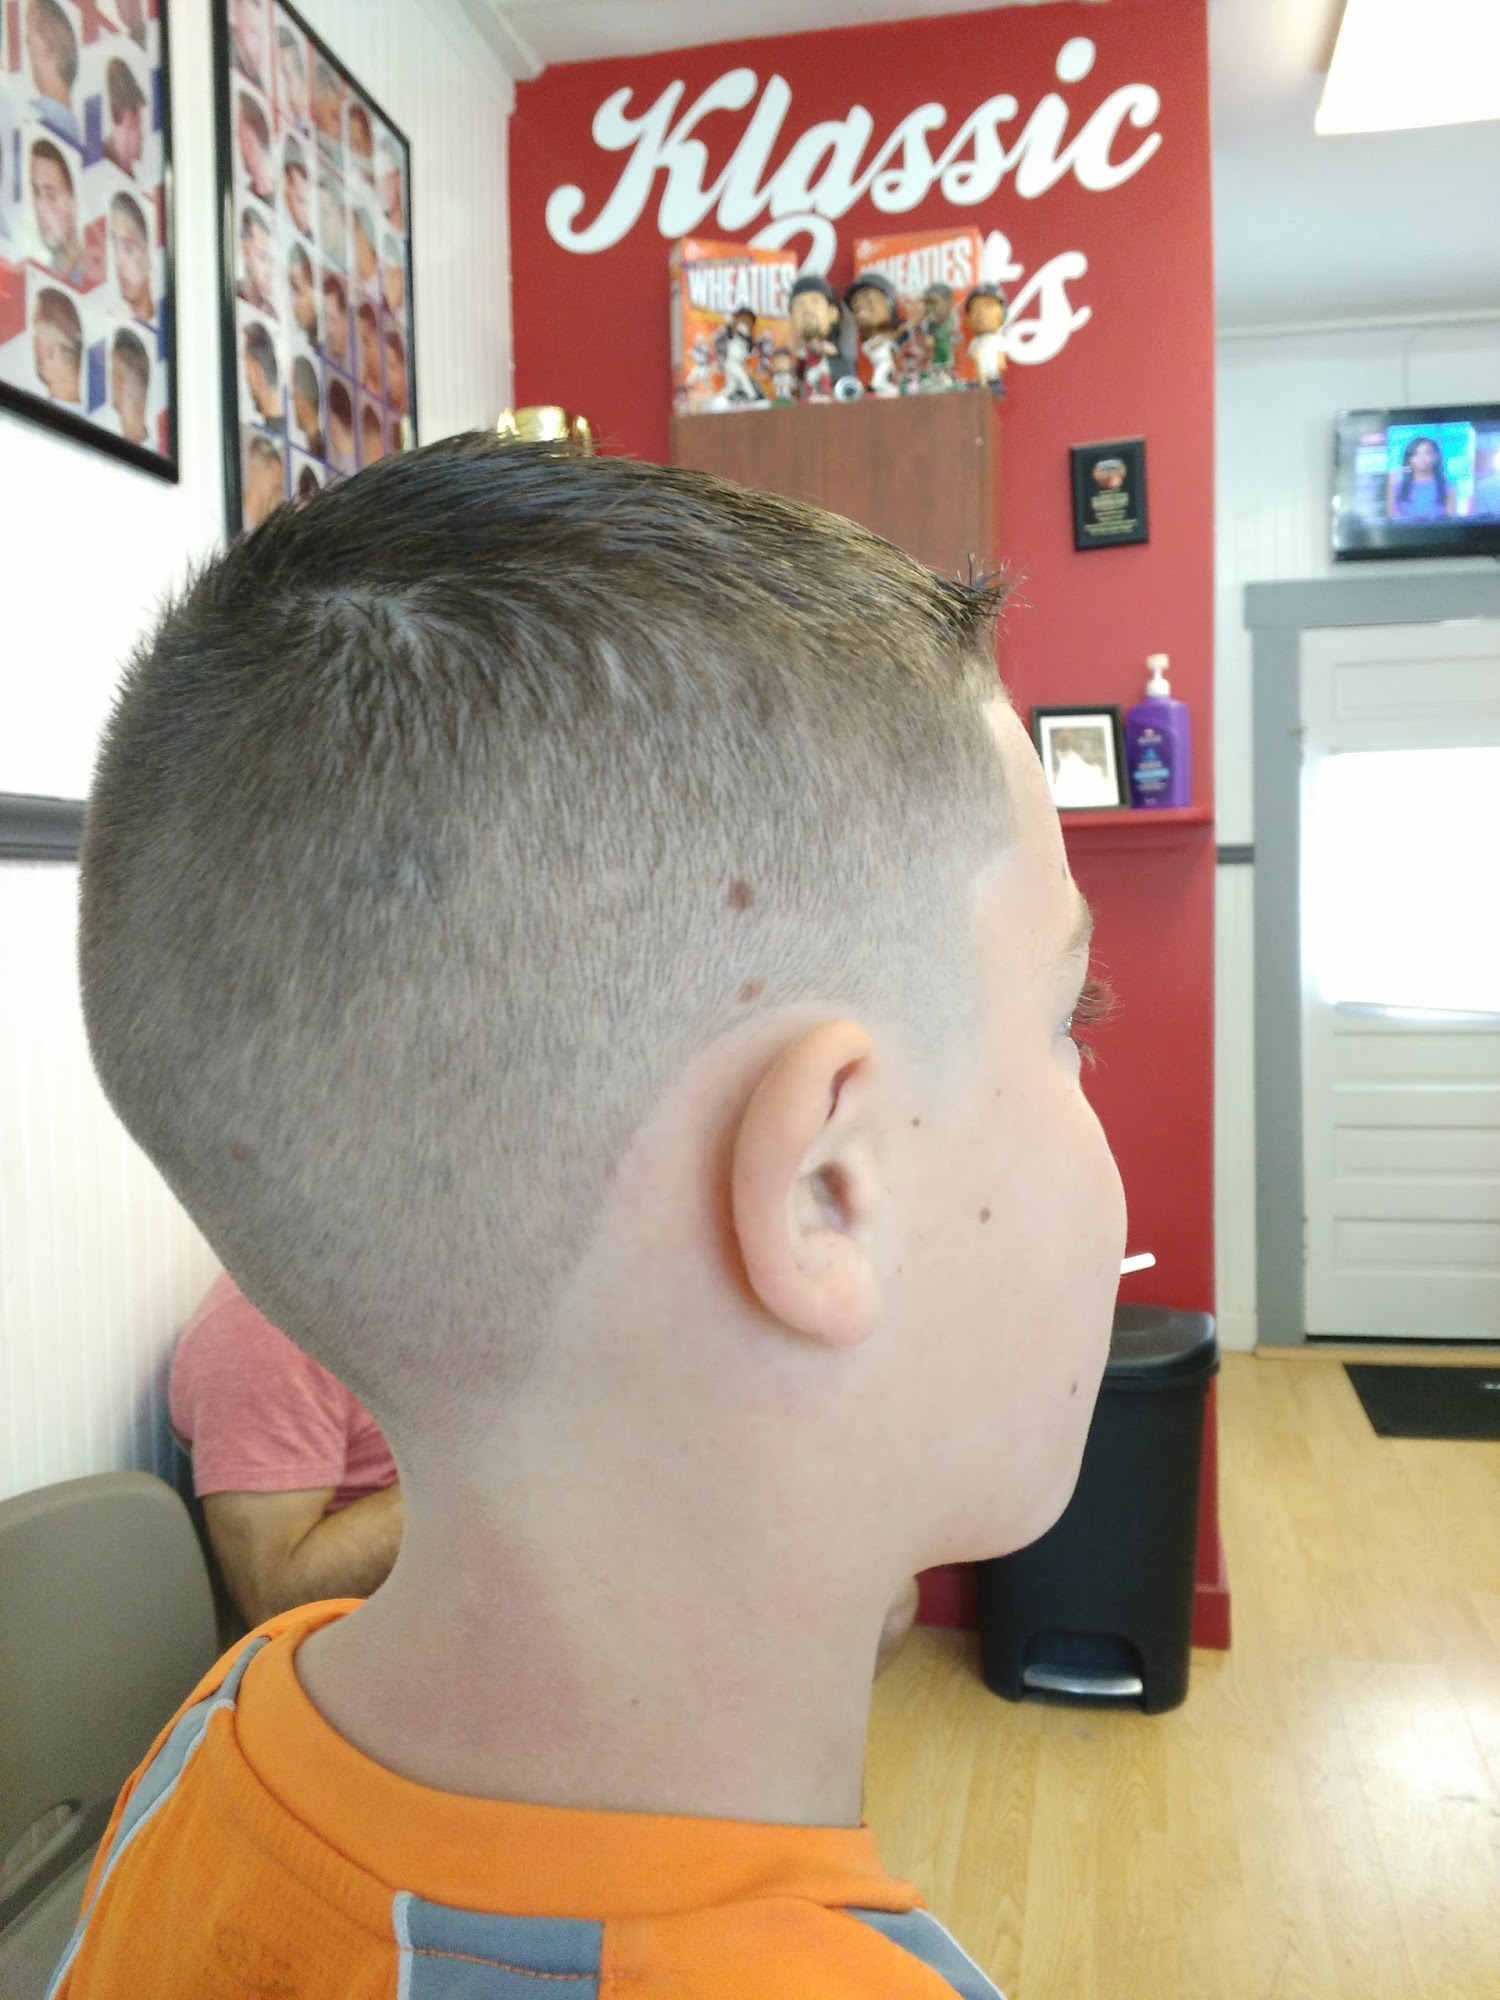 Klassic Cuts Barbershop